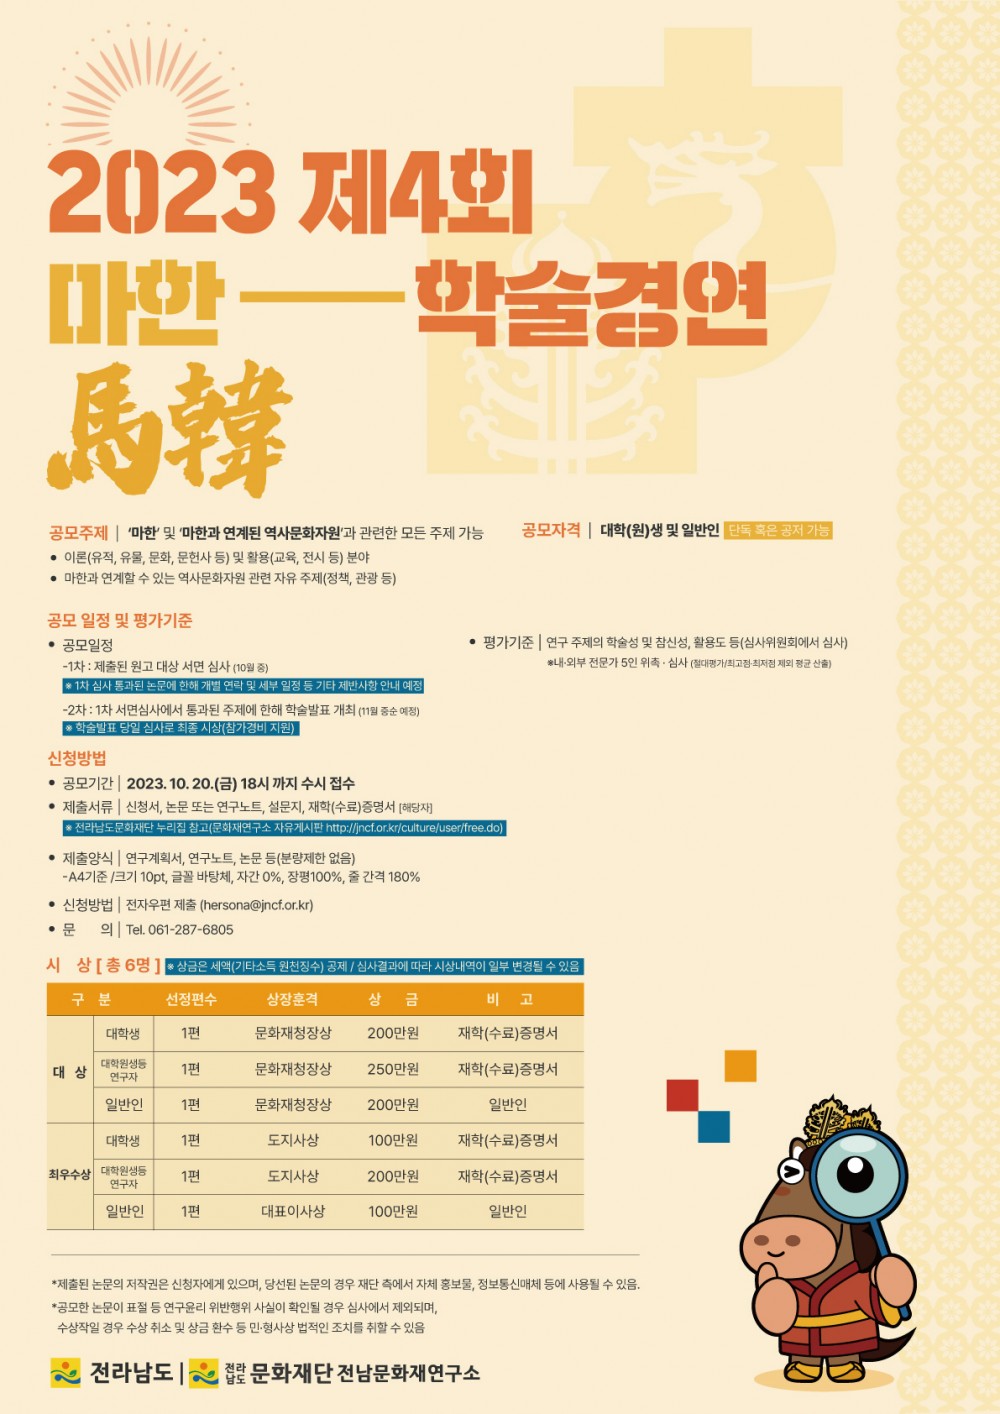 2. 마한 학술경연대회 포스터